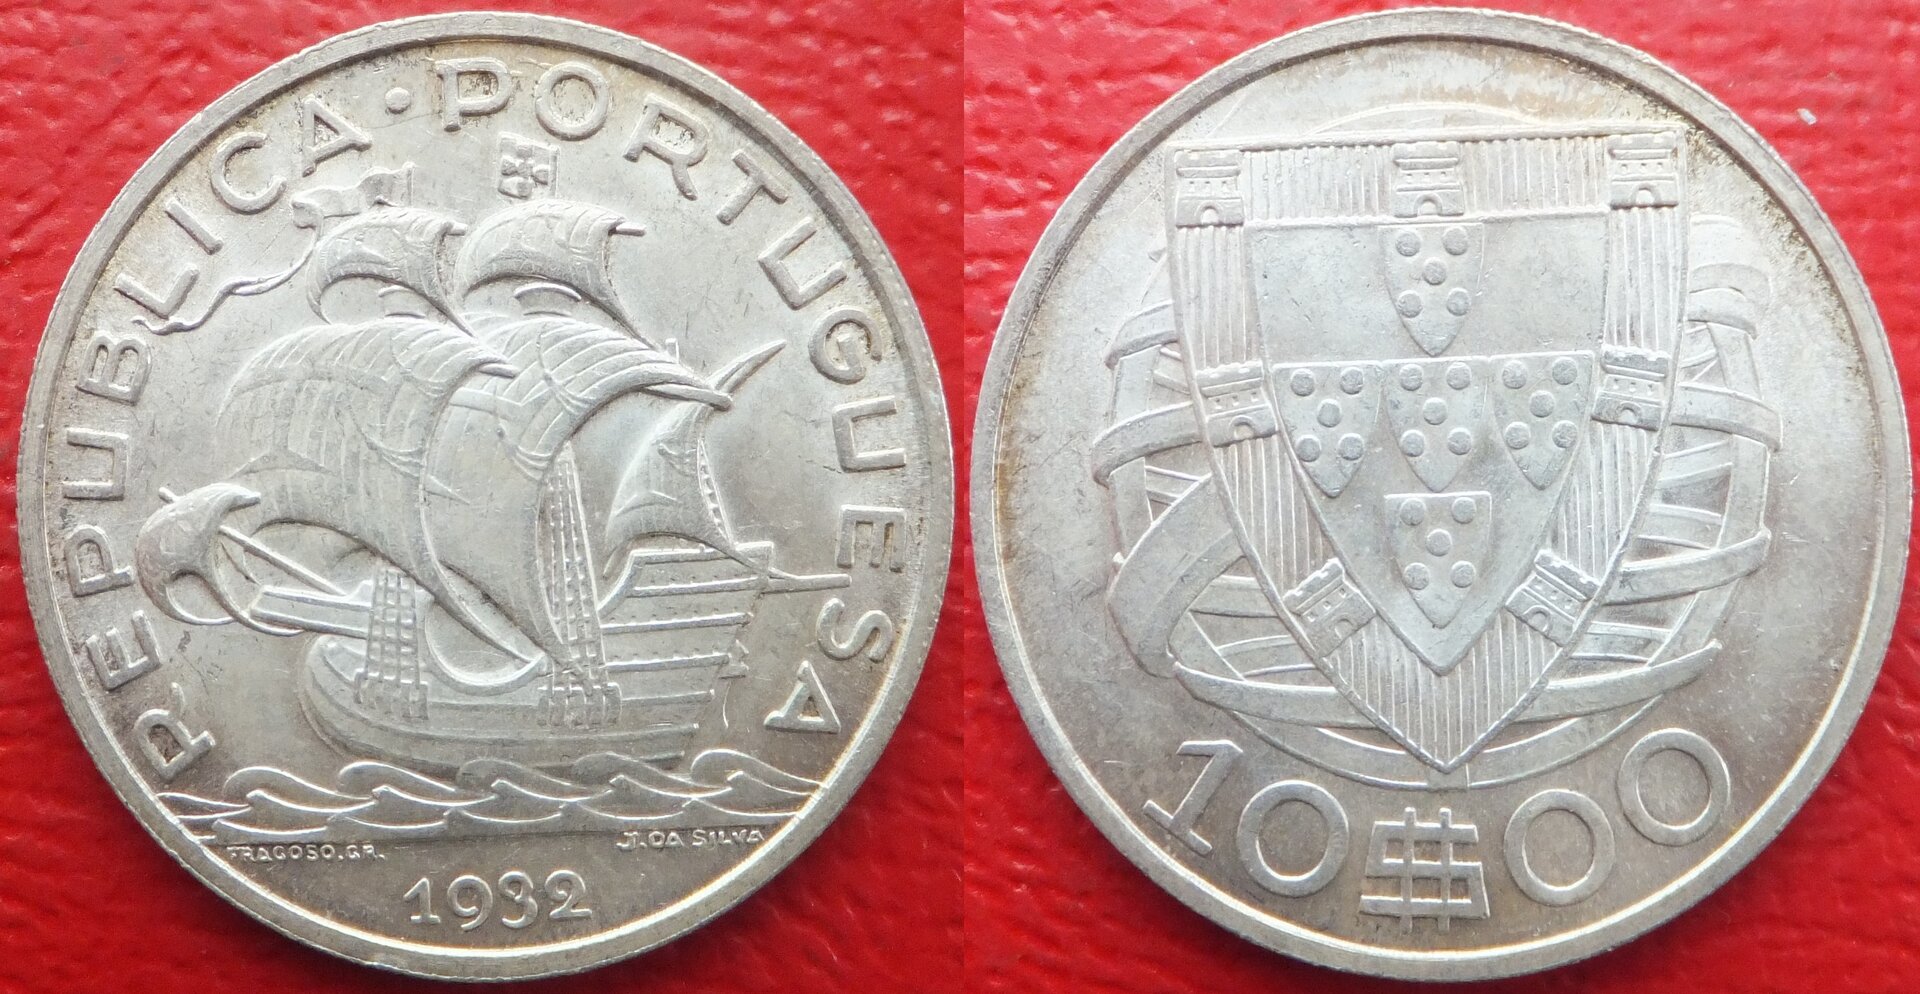 Portugal 10 escudos 1932 (3).jpg